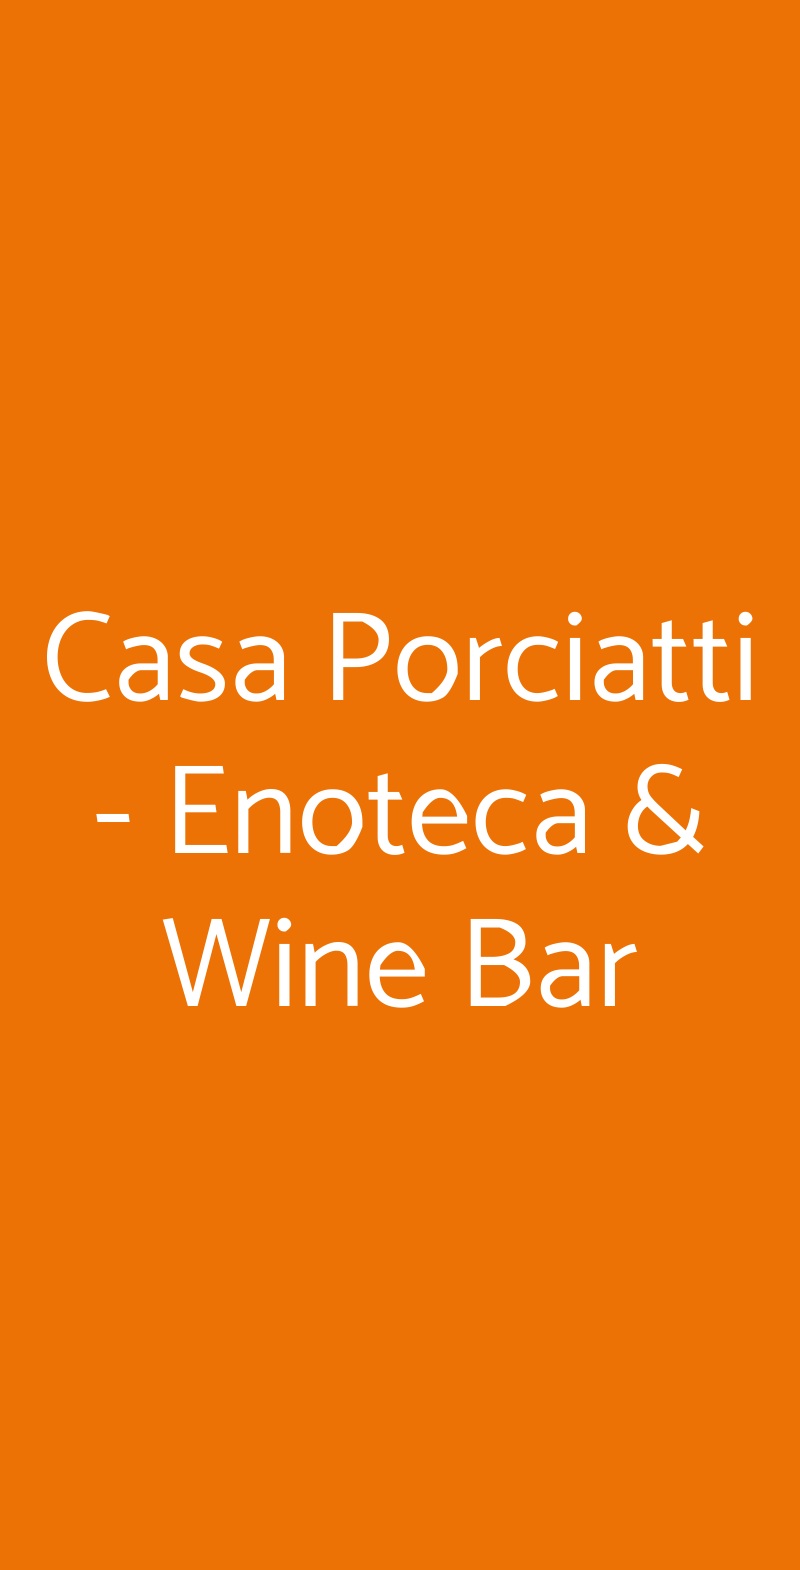 Casa Porciatti - Enoteca & Wine Bar Radda in Chianti menù 1 pagina